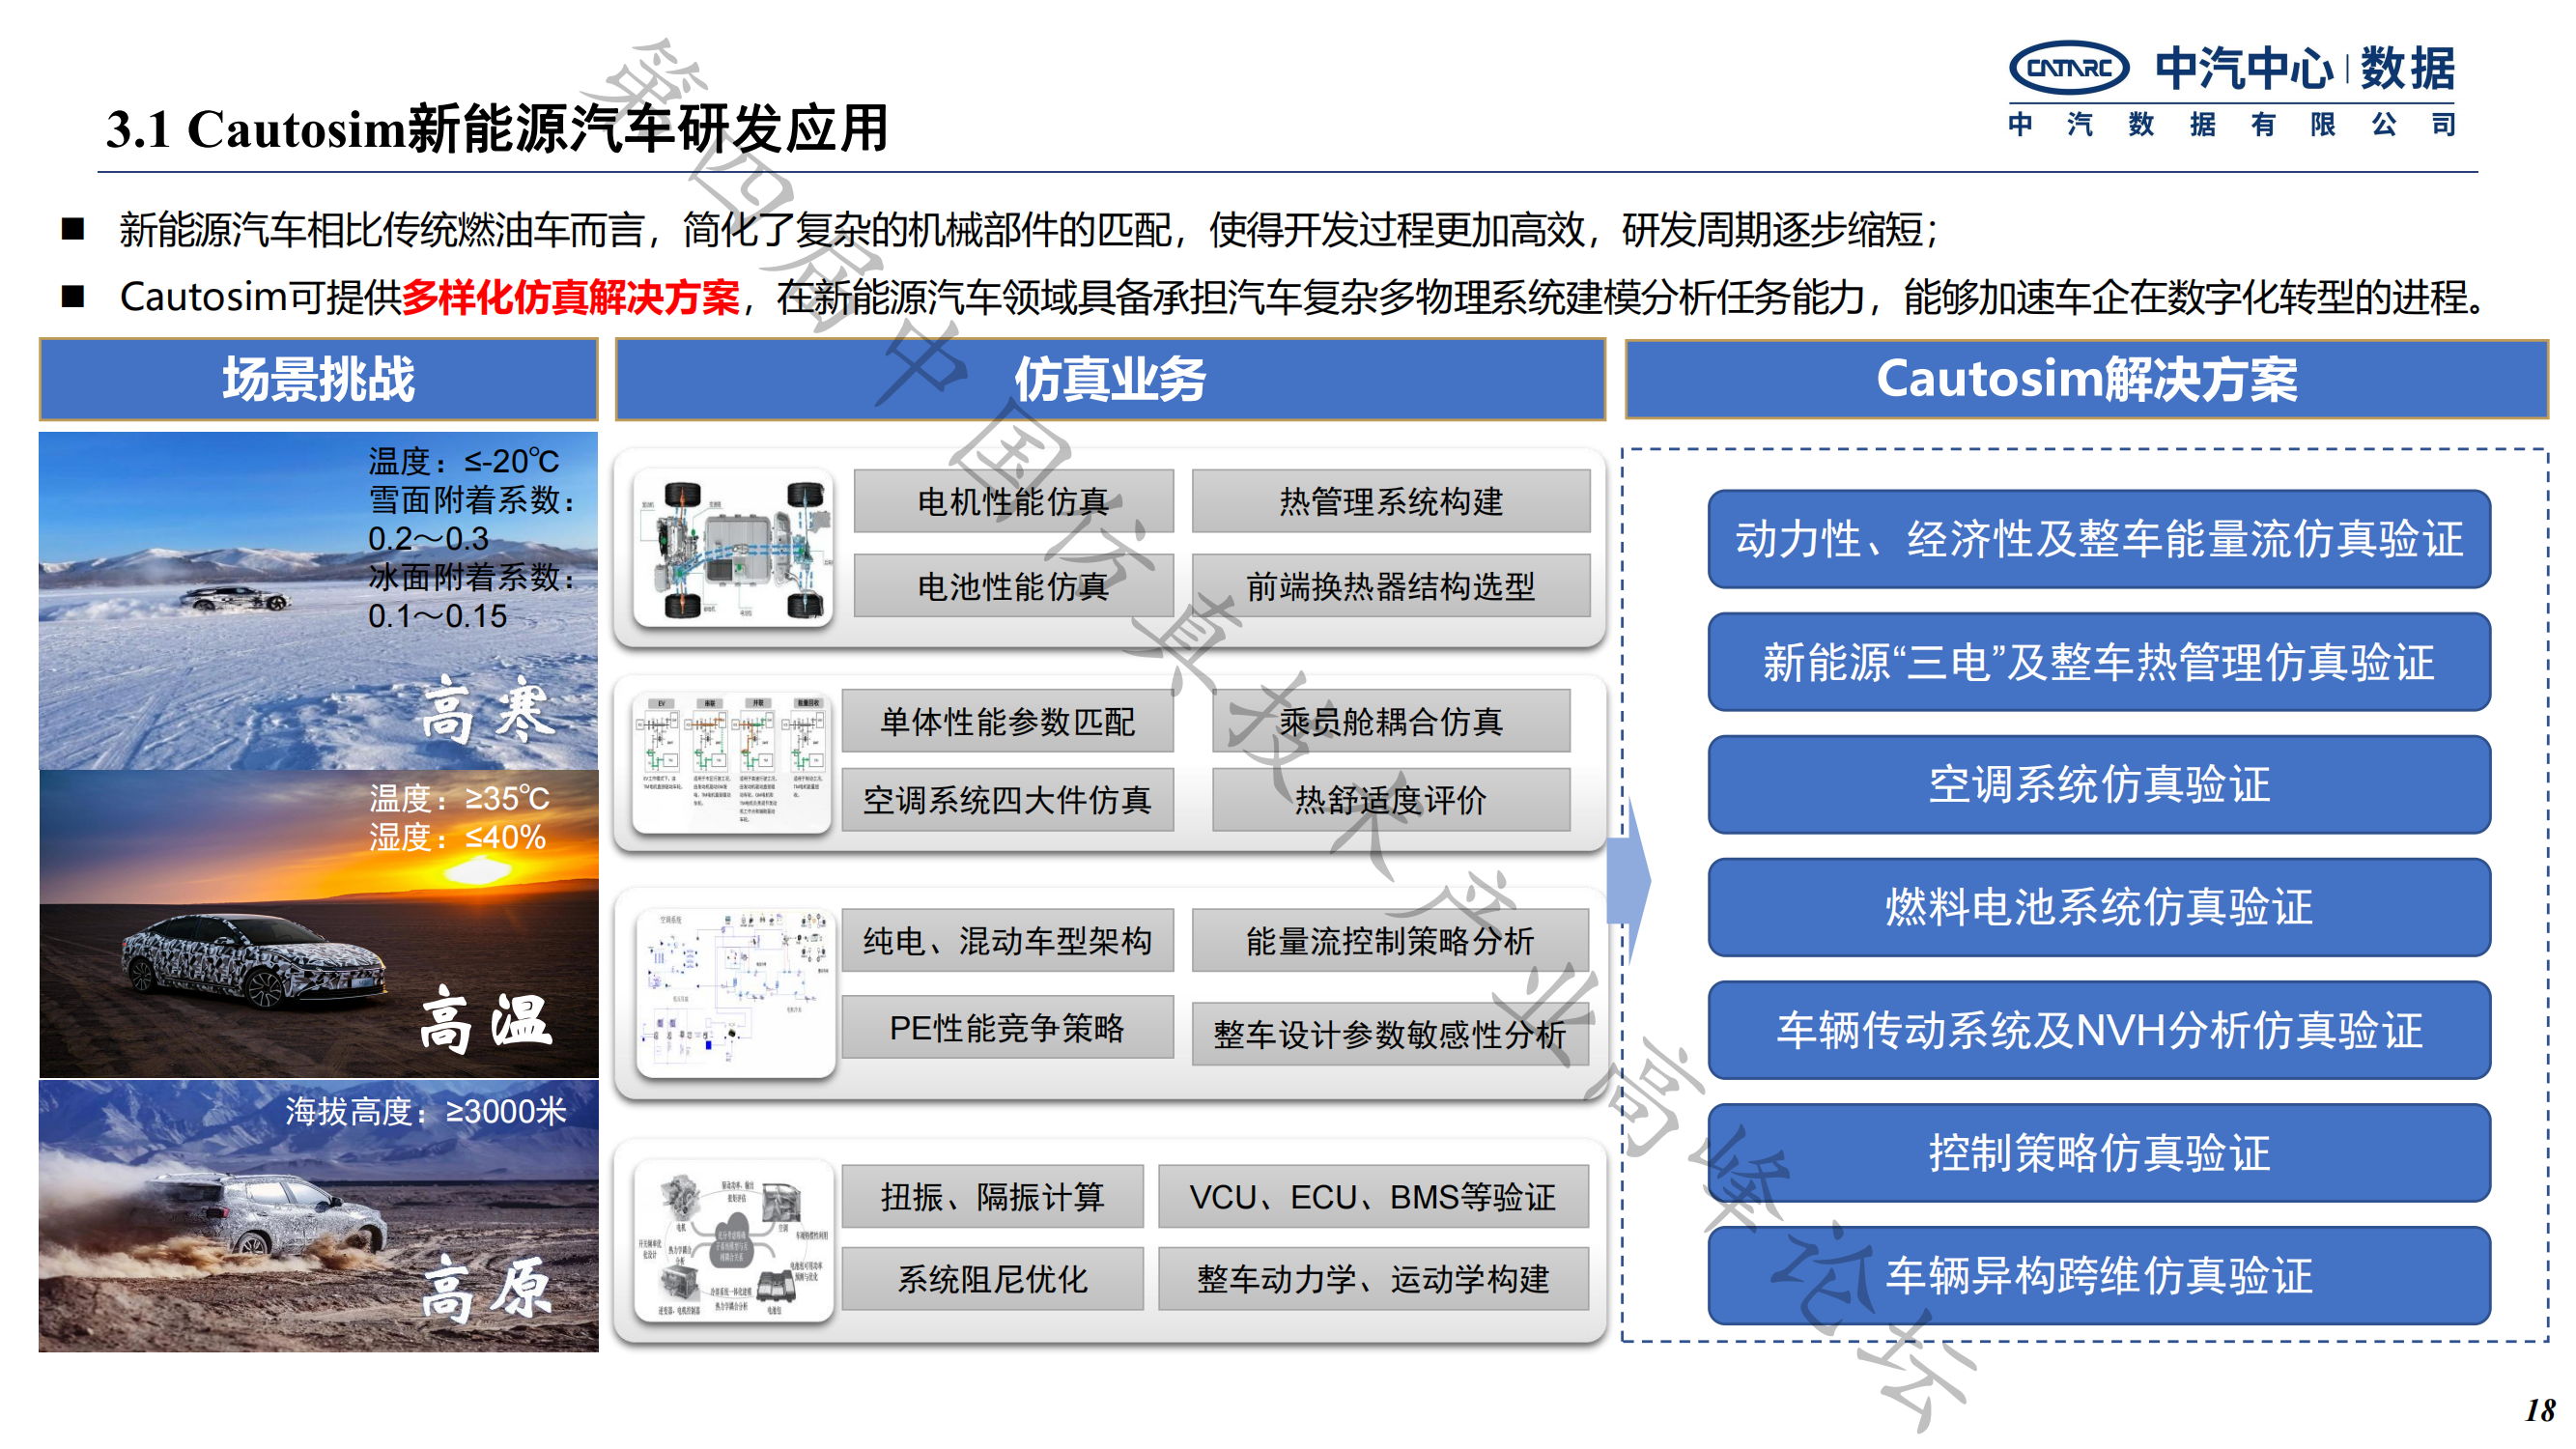 何绍清-国产系统仿真工具在新能源整车研发的应用实践-中汽数据(1)_17.png